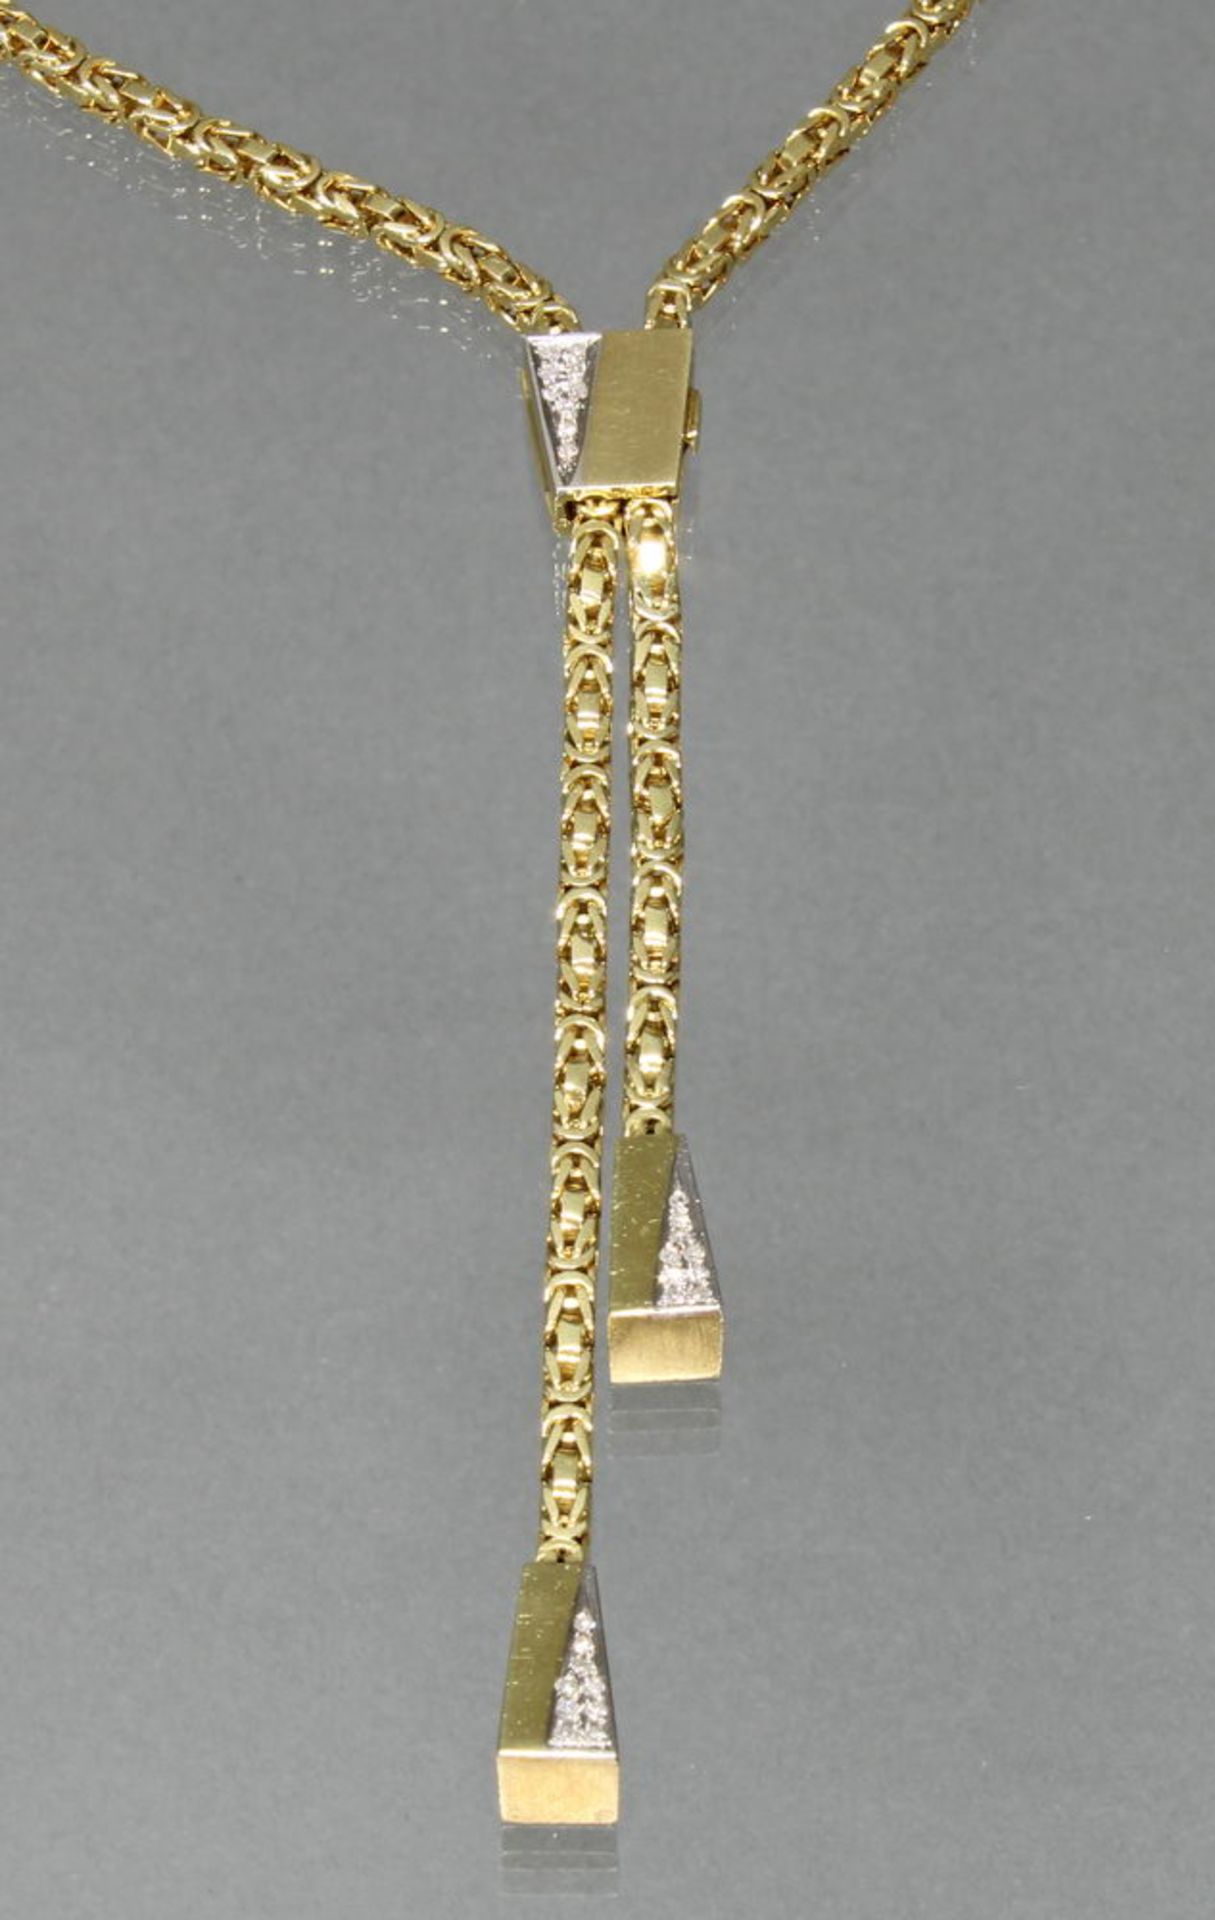 Y-Collier/Königskette, mit Verstellclip, WG/GG 585, 27 Diamanten zus. ca. 0.25 ct., alle etwa fw/s - Bild 2 aus 2